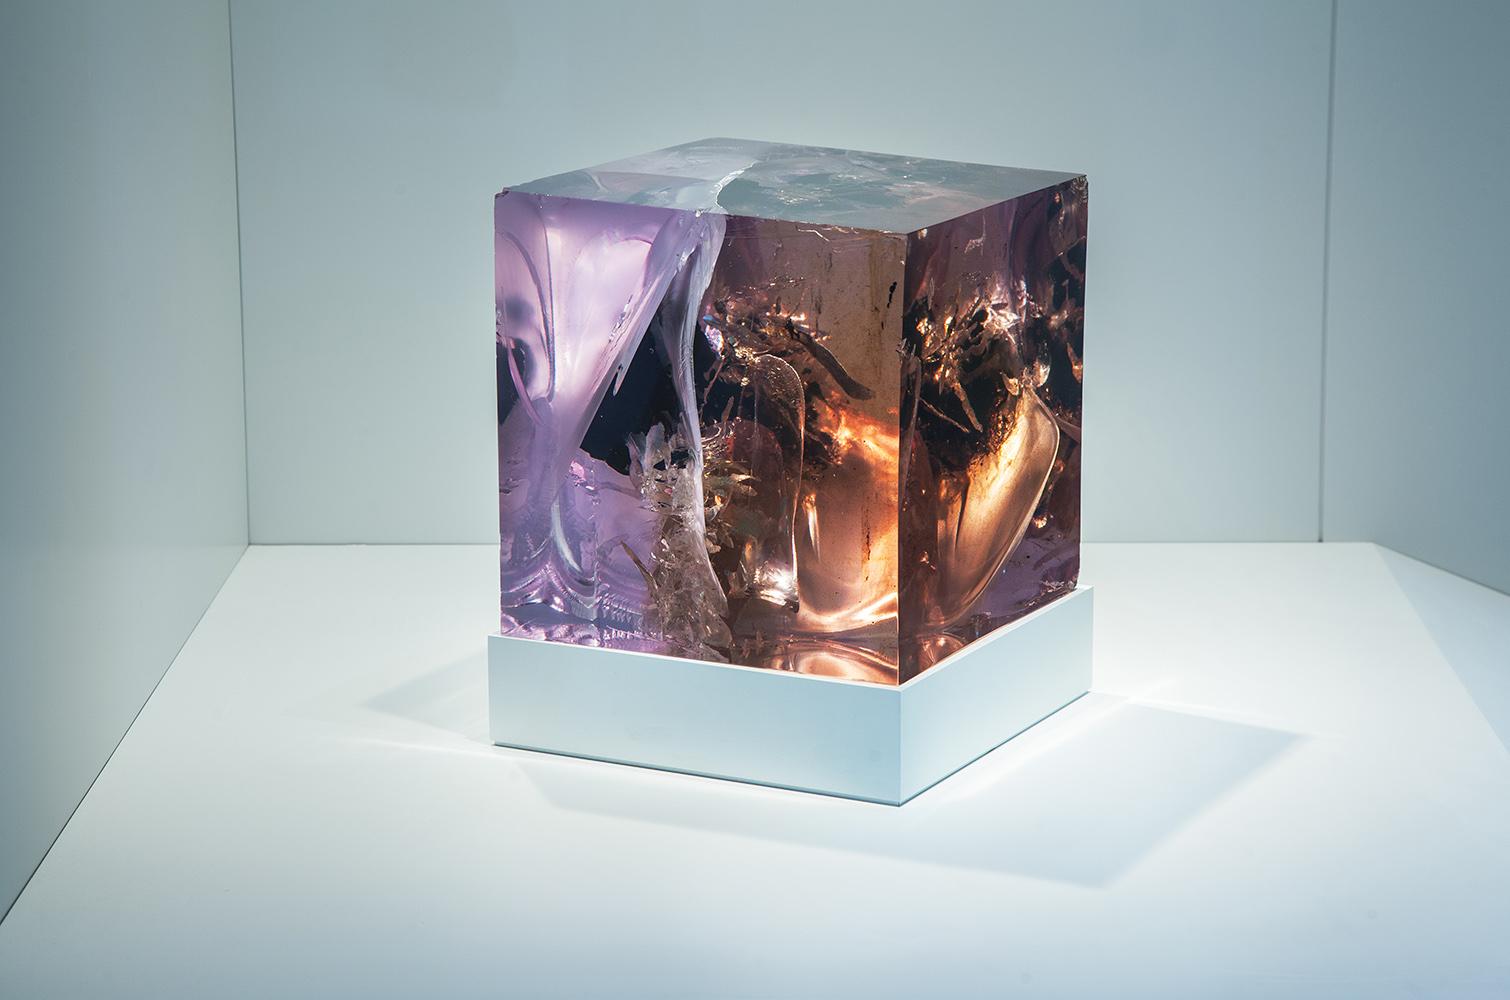 Résine, goudron, acrylique, LED. 
28.8 cm × 29.5 cm × 29.5 cm.
Dans la série Synthesis, Tom Price oblige la résine et le goudron à vivre dans le même espace, expérimentant les réactions chimiques par le biais de matériaux chauffants et de processus